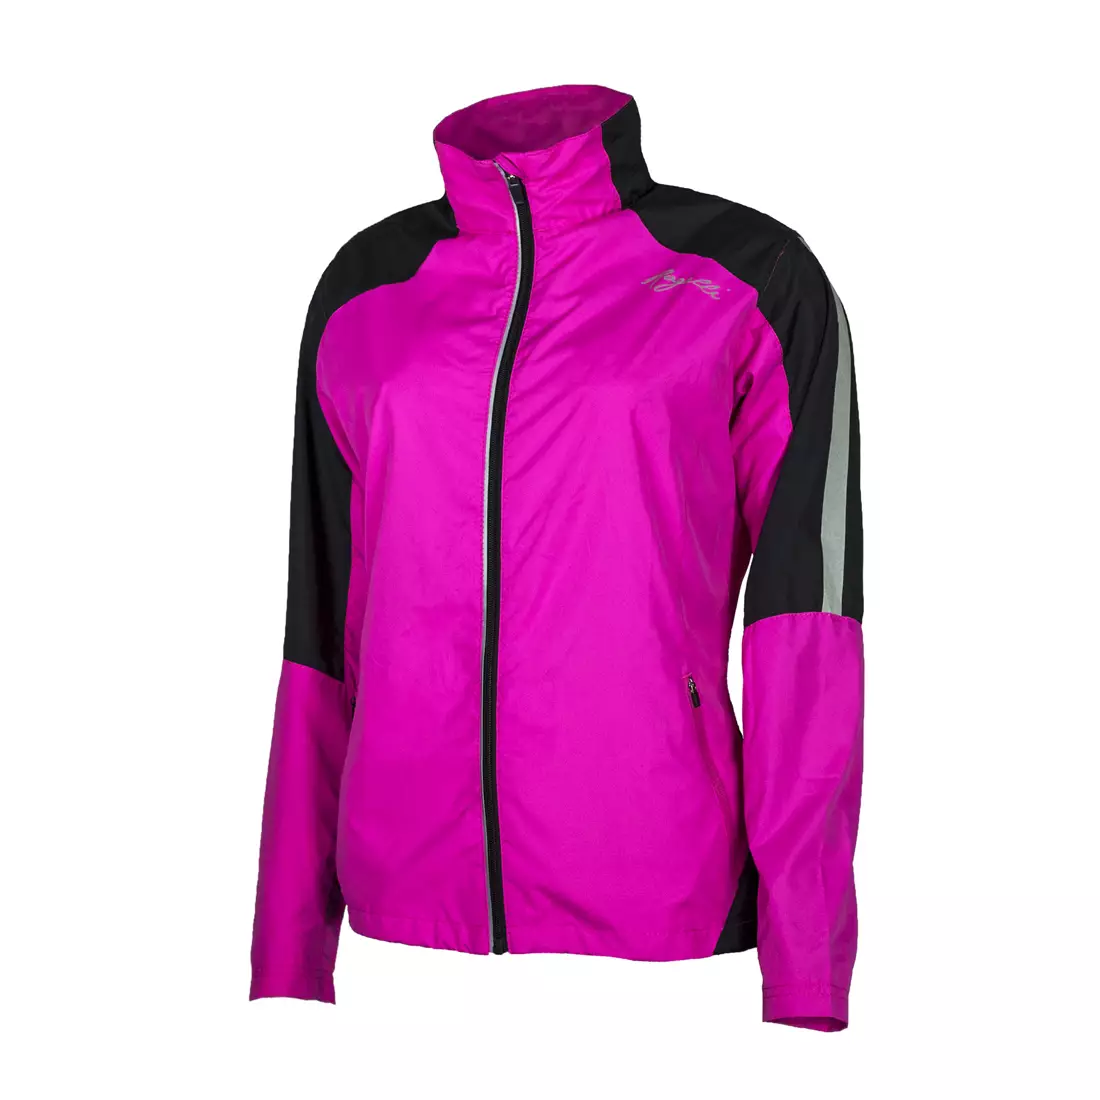 ROGELLI RUN CWEN 840.853- jachetă pentru alergare damă, culoare: roz